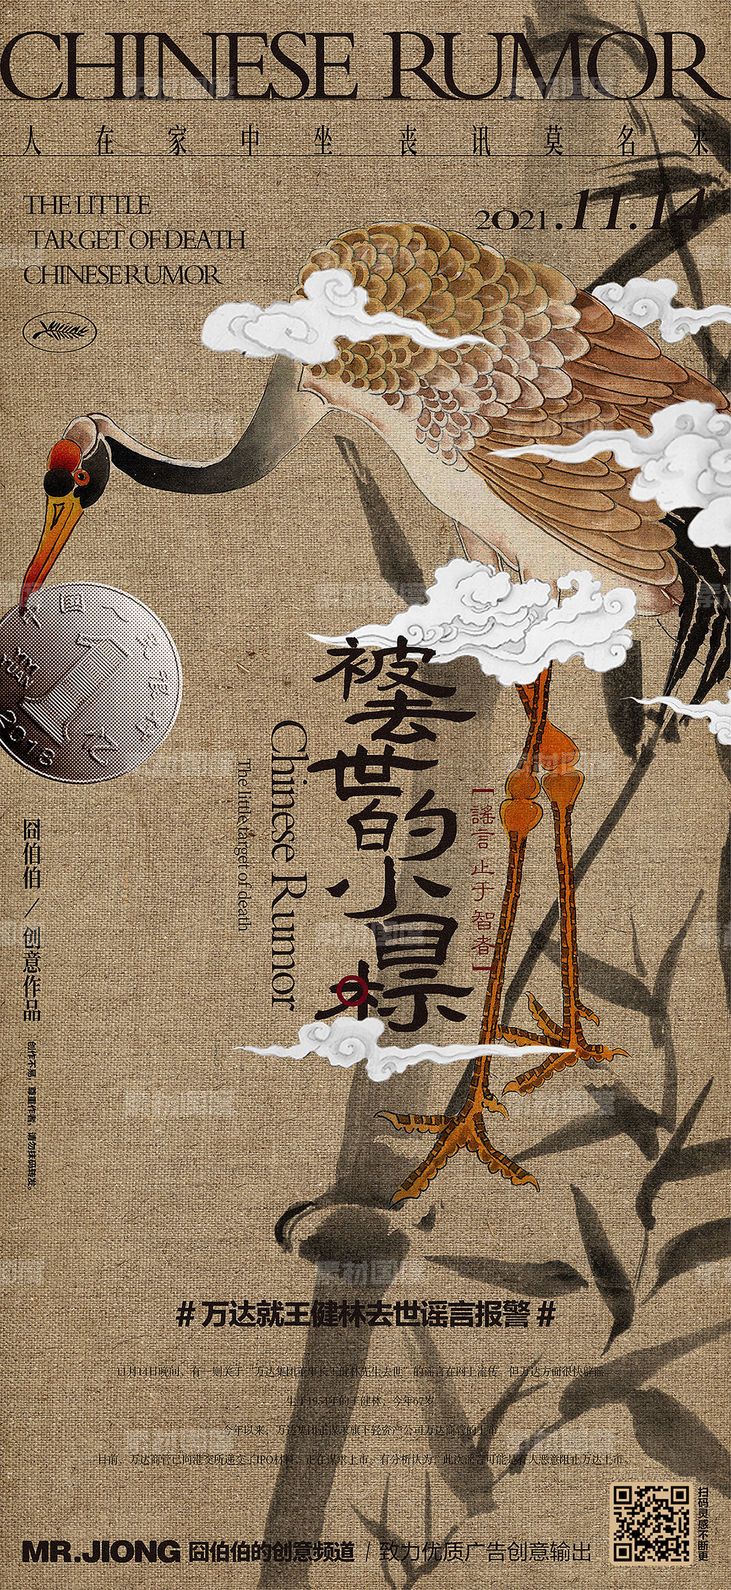 地产热点微信创意海报手绘国画中国风中式